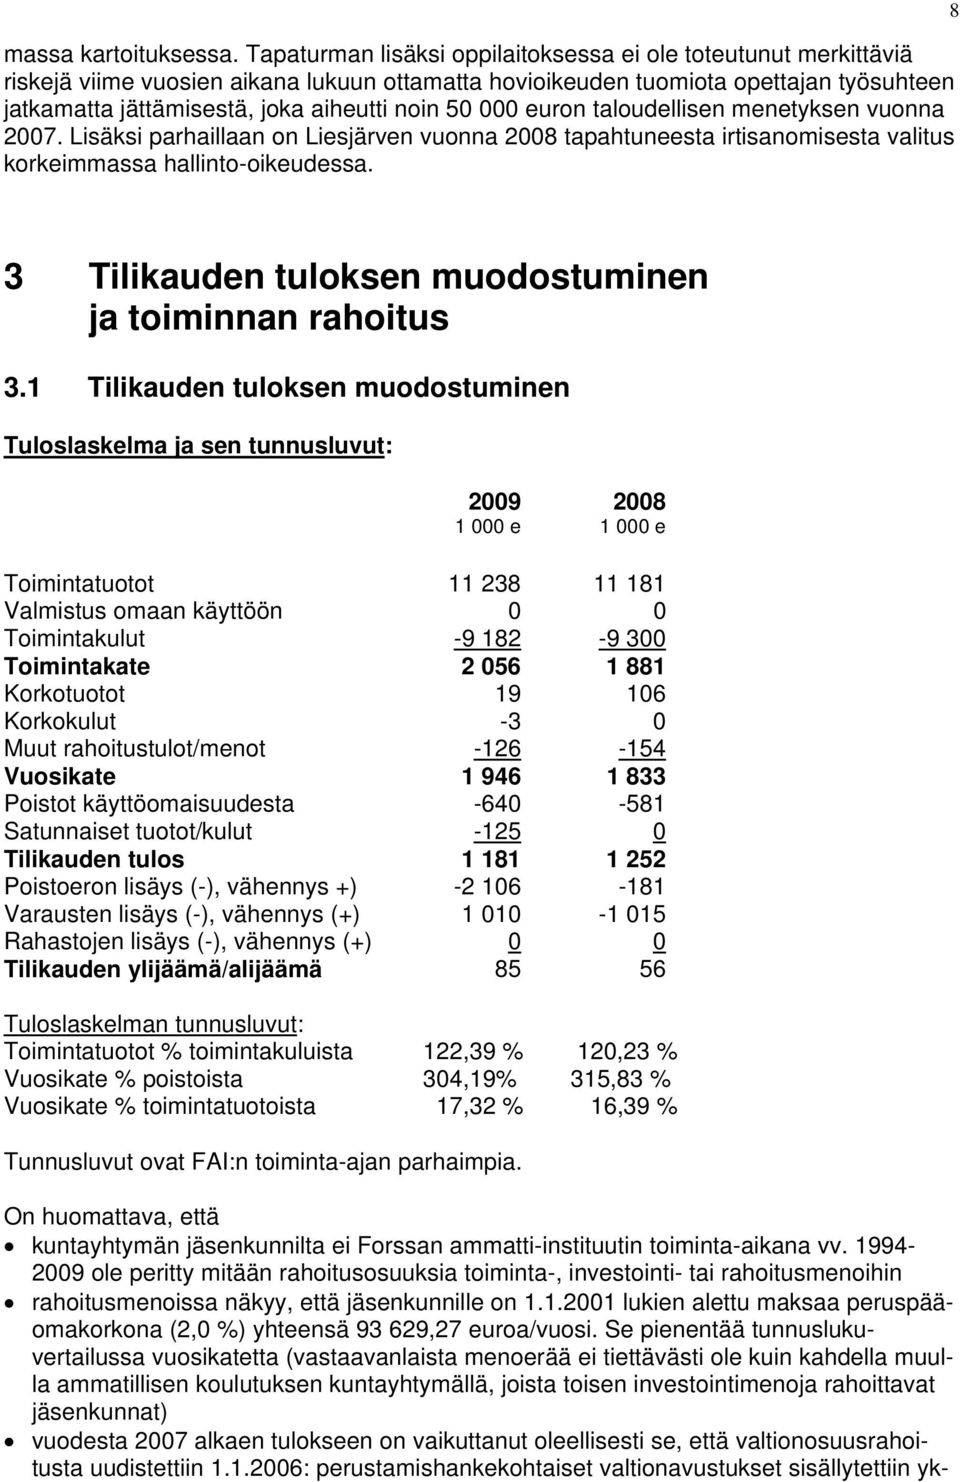 50 000 euron taloudellisen menetyksen vuonna 2007. Lisäksi parhaillaan on Liesjärven vuonna 2008 tapahtuneesta irtisanomisesta valitus korkeimmassa hallinto-oikeudessa.